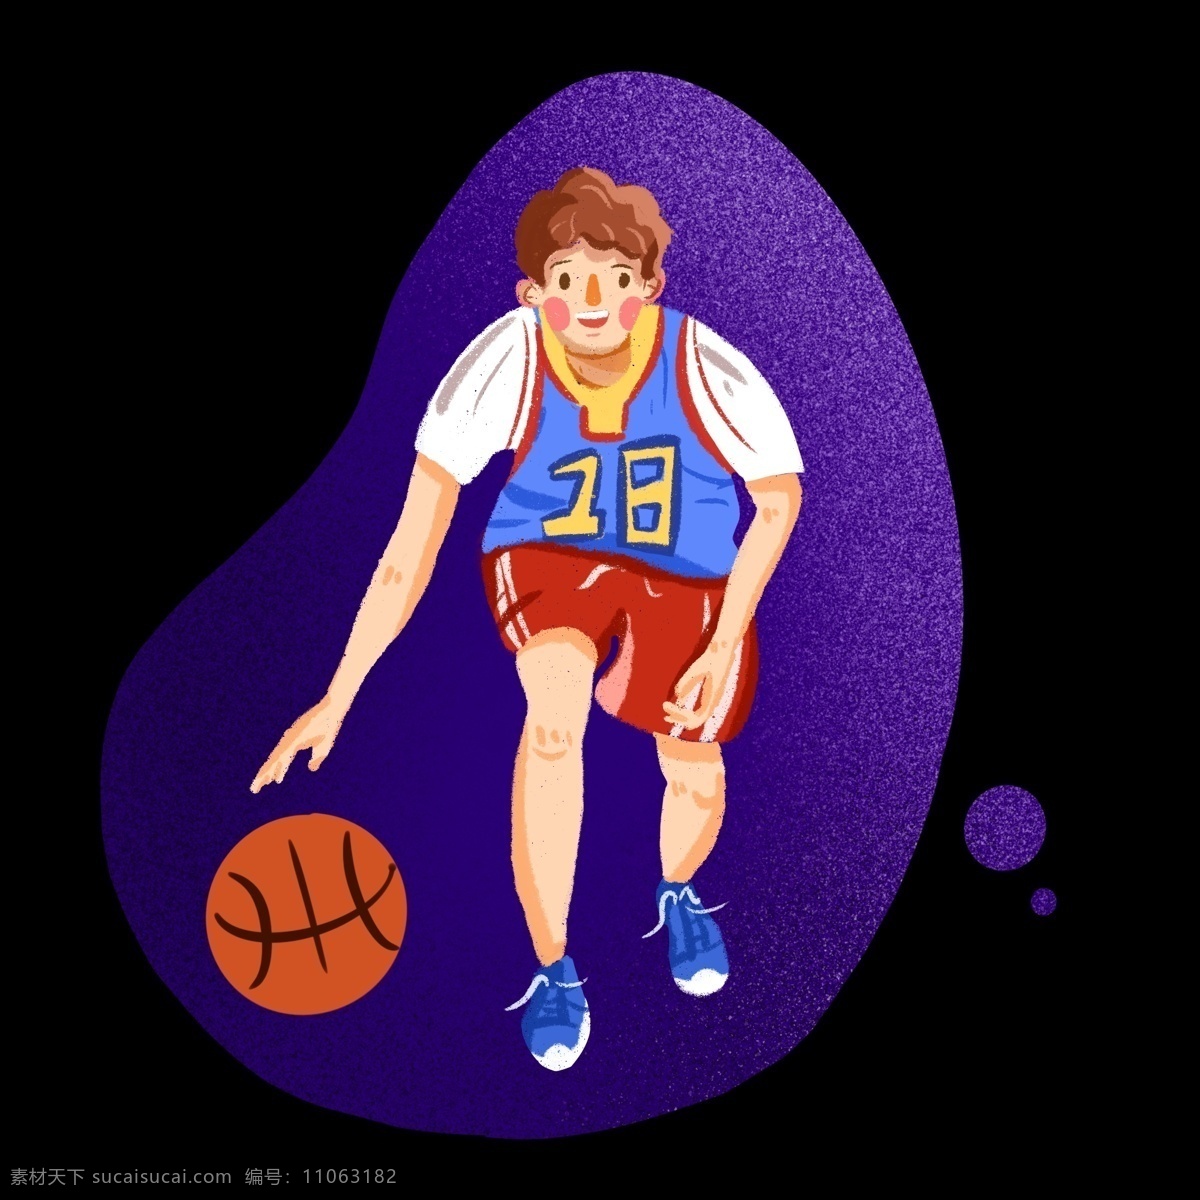 篮球 爱好者 运动 男孩 手绘 插画 免 抠 打篮球 运动男孩 拍球 运动服 篮球服 篮球队队员 阳光型男孩 健身 积极向上 插画风